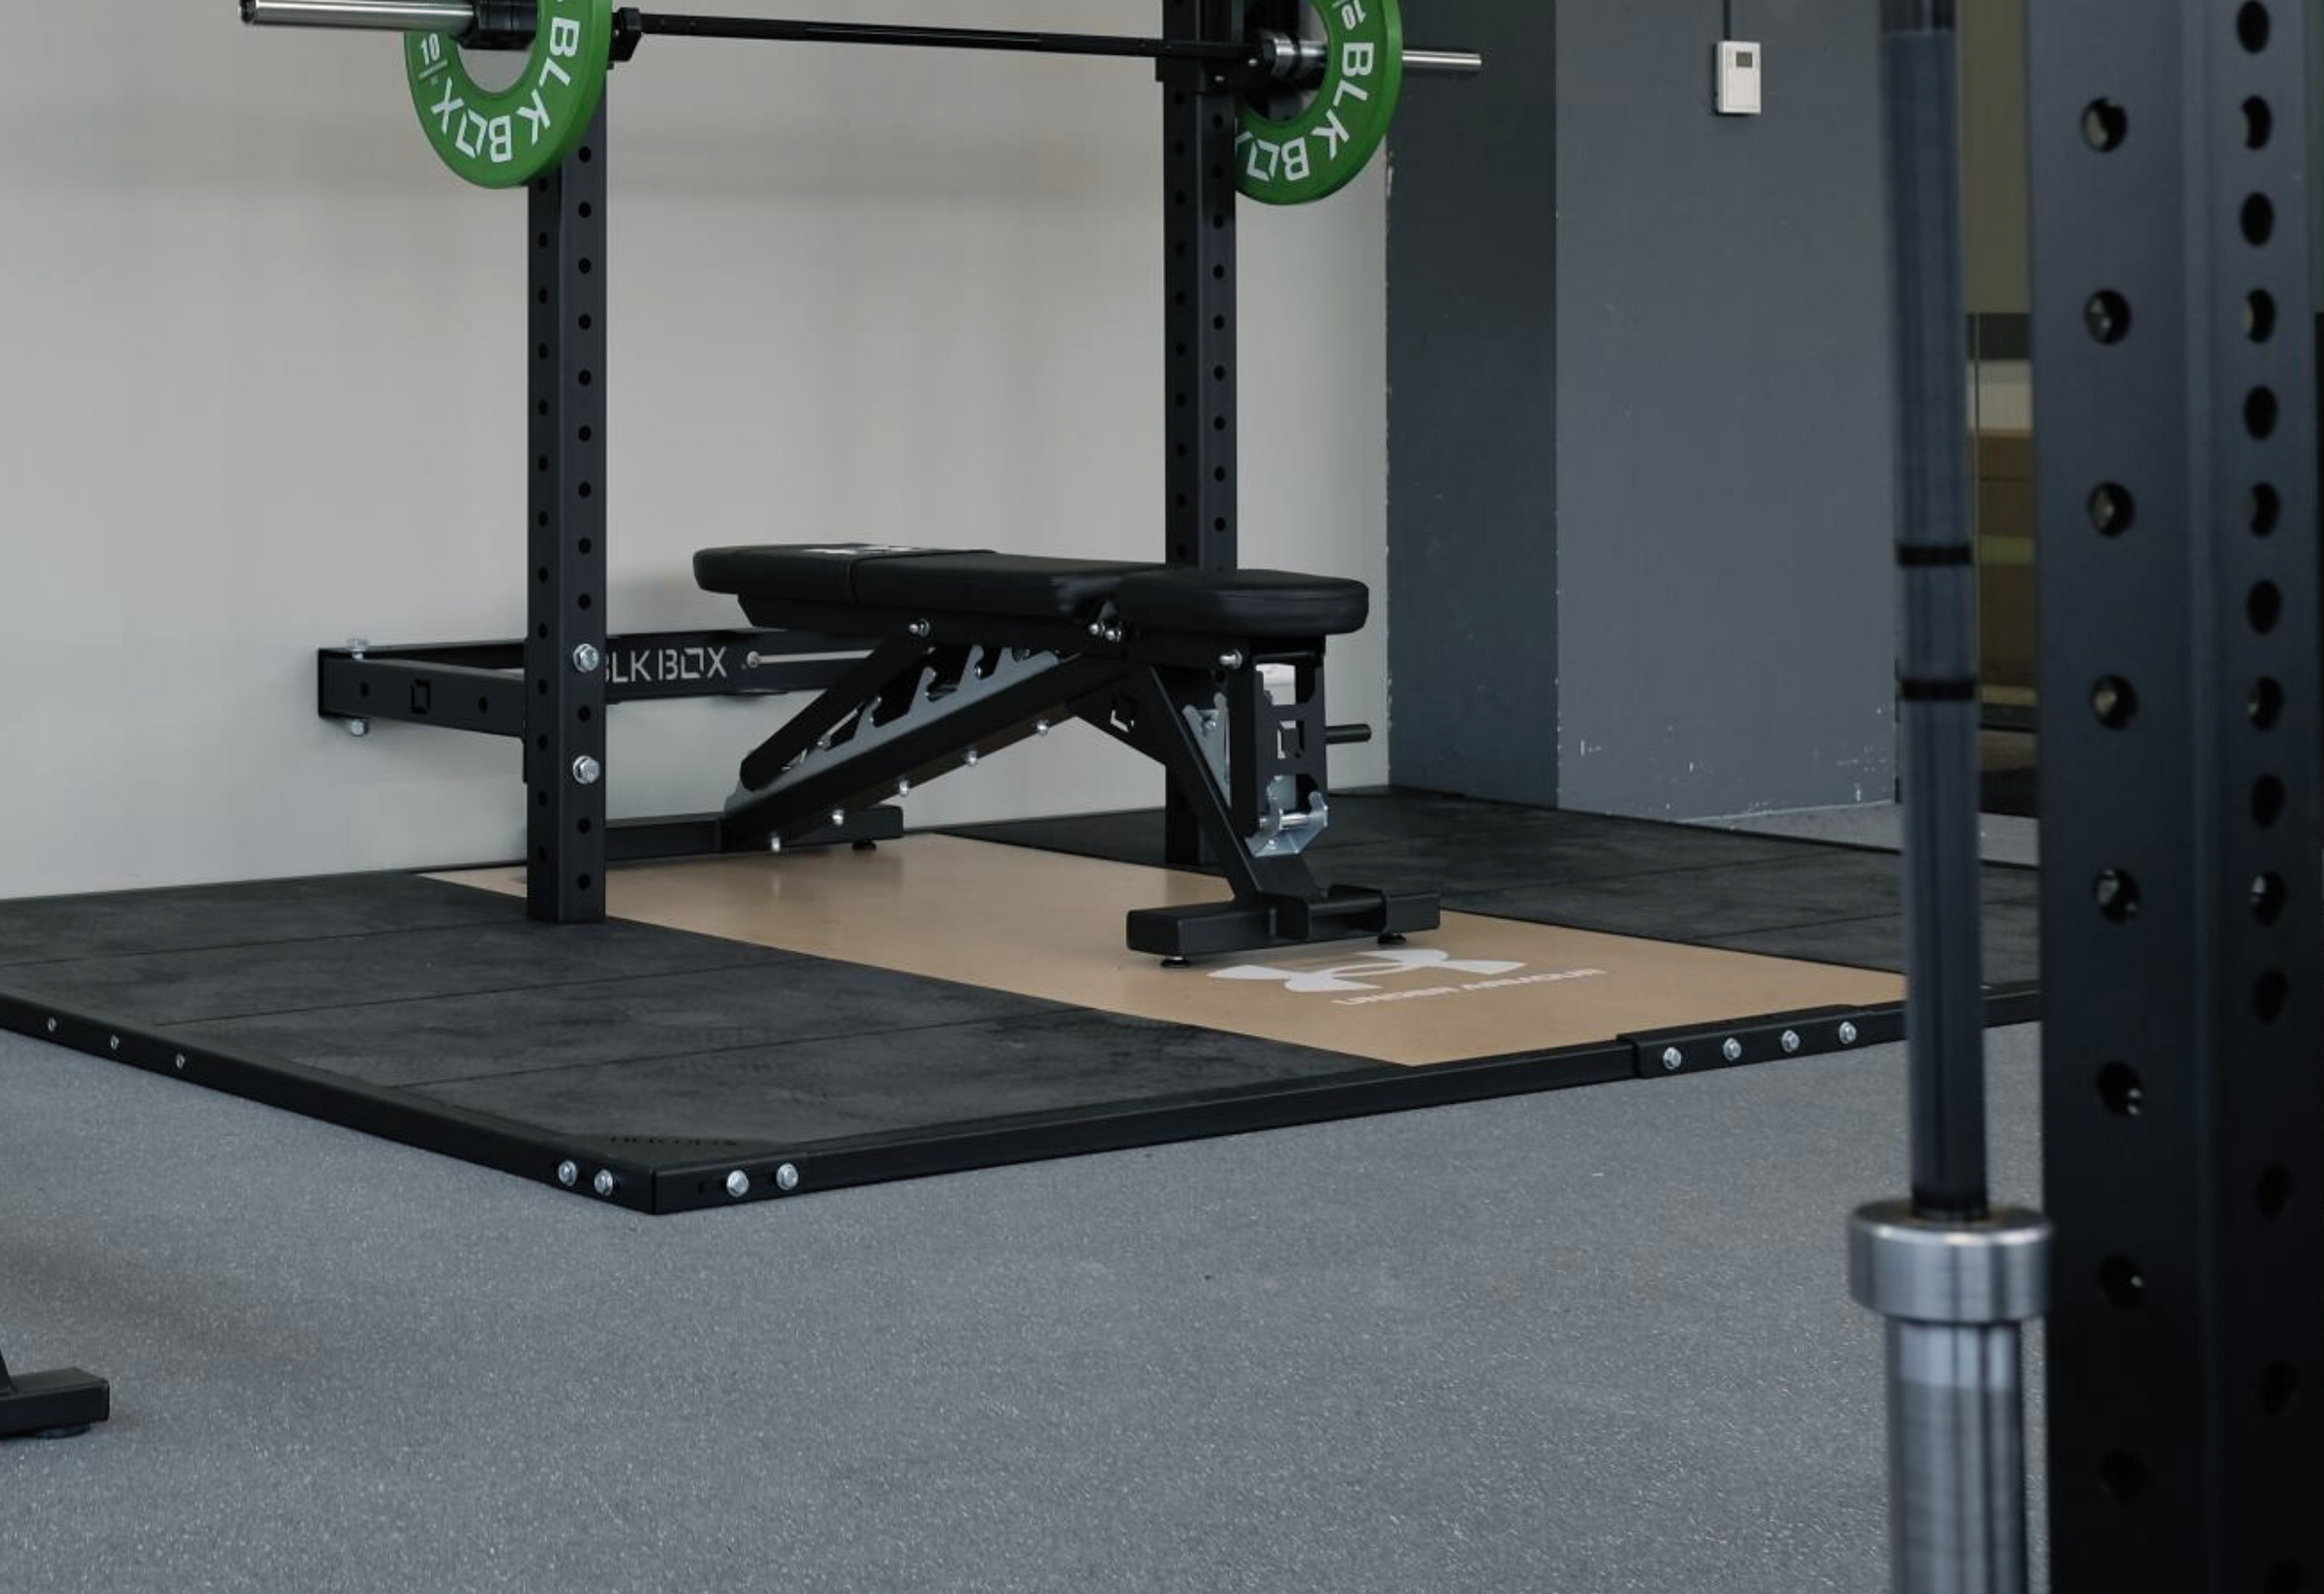 Gym weightlifting platforms